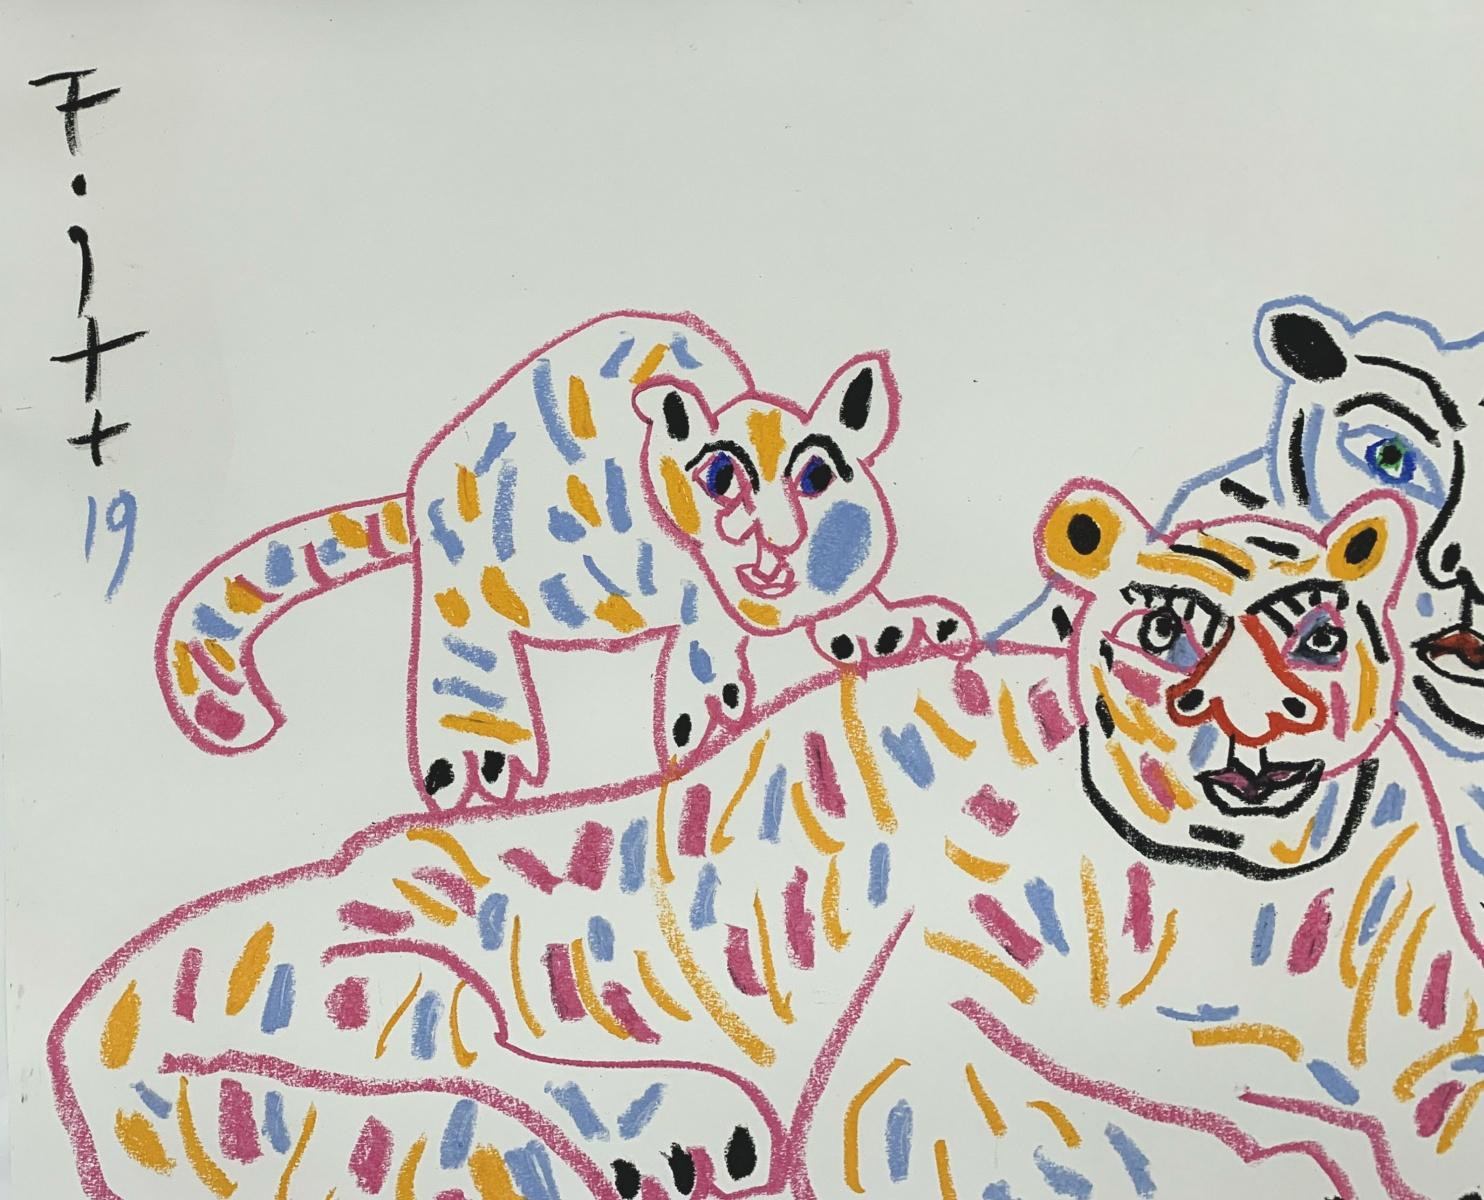 Tiger mit Sohn - Polnischer Kunstmeister, Pastellfarben, Tiere, chinesisches Tierkreiszeichen (Grau), Figurative Painting, von Andrzej Fogtt